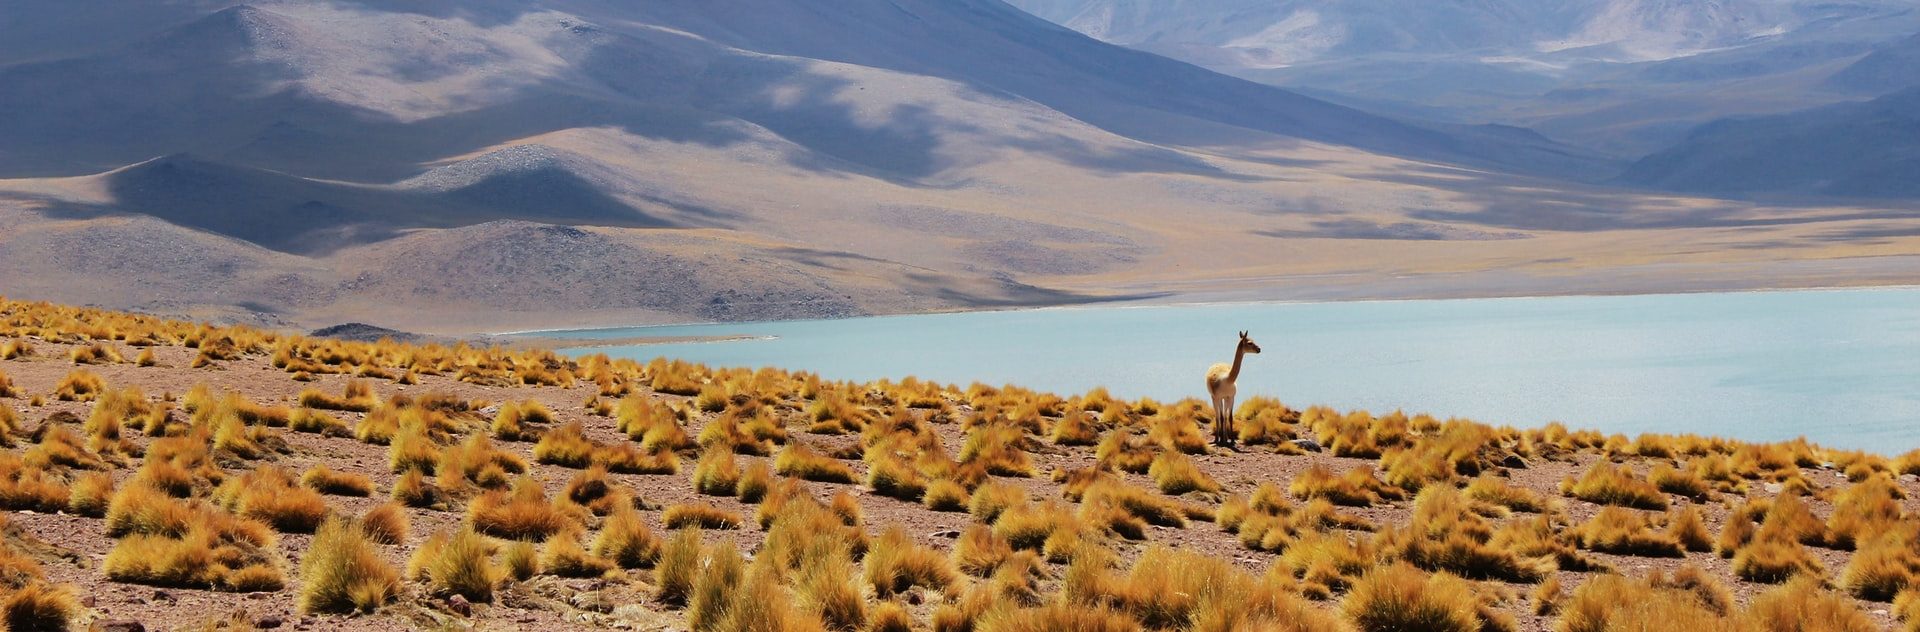 Programas para apoyar a los emprendedores turísticos rurales de Chile